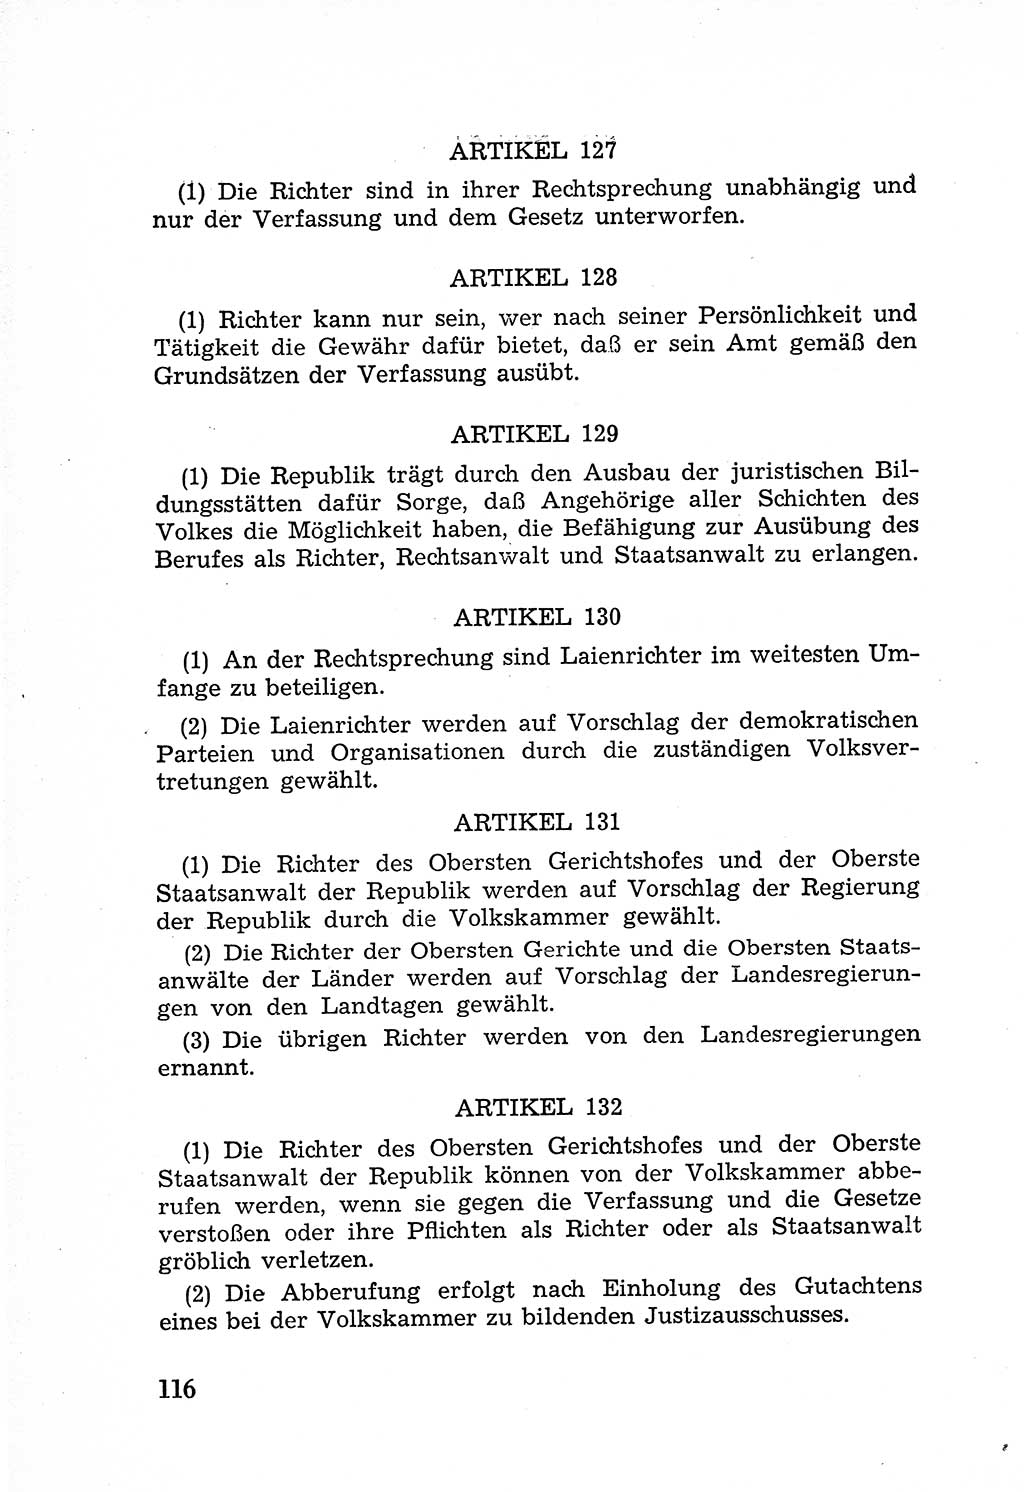 Rechtsstaat in zweierlei Hinsicht, Untersuchungsausschuß freiheitlicher Juristen (UfJ) [Bundesrepublik Deutschland (BRD)] 1956, Seite 116 (R.-St. UfJ BRD 1956, S. 116)